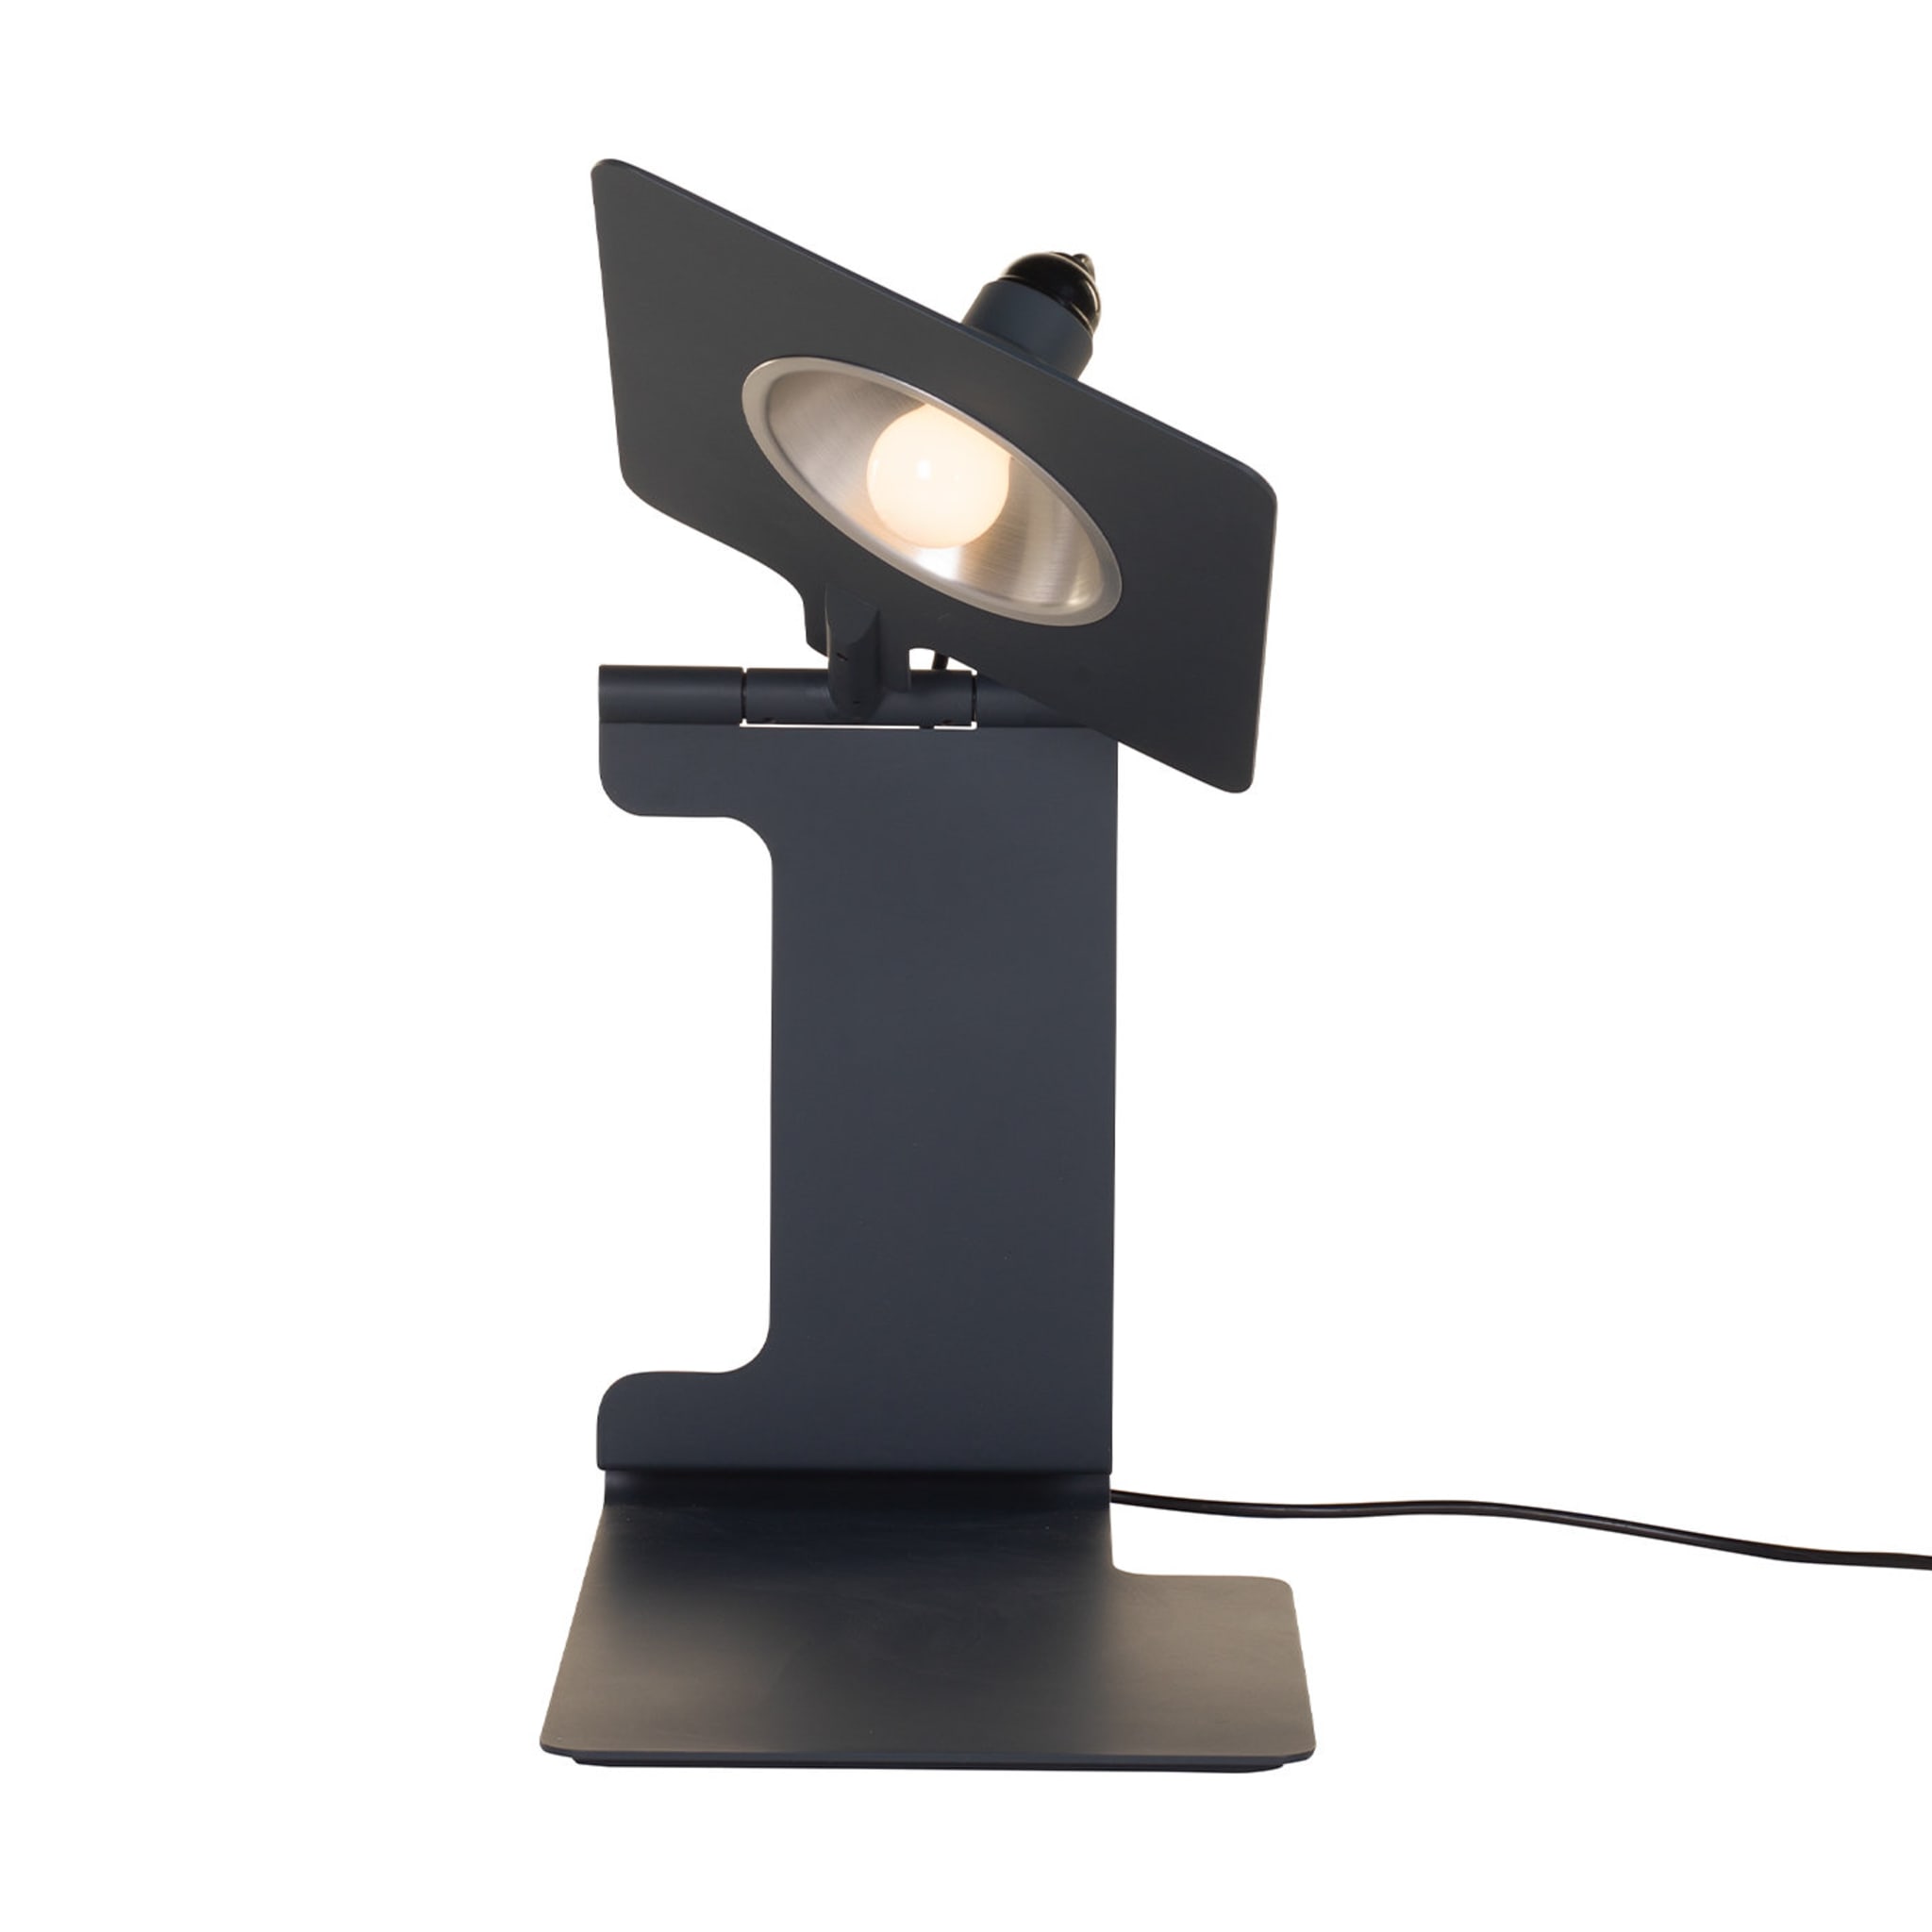 Scuderia Table Lamp by Studio Caccia Dominioni-Zucca & Associati - Alternative view 5